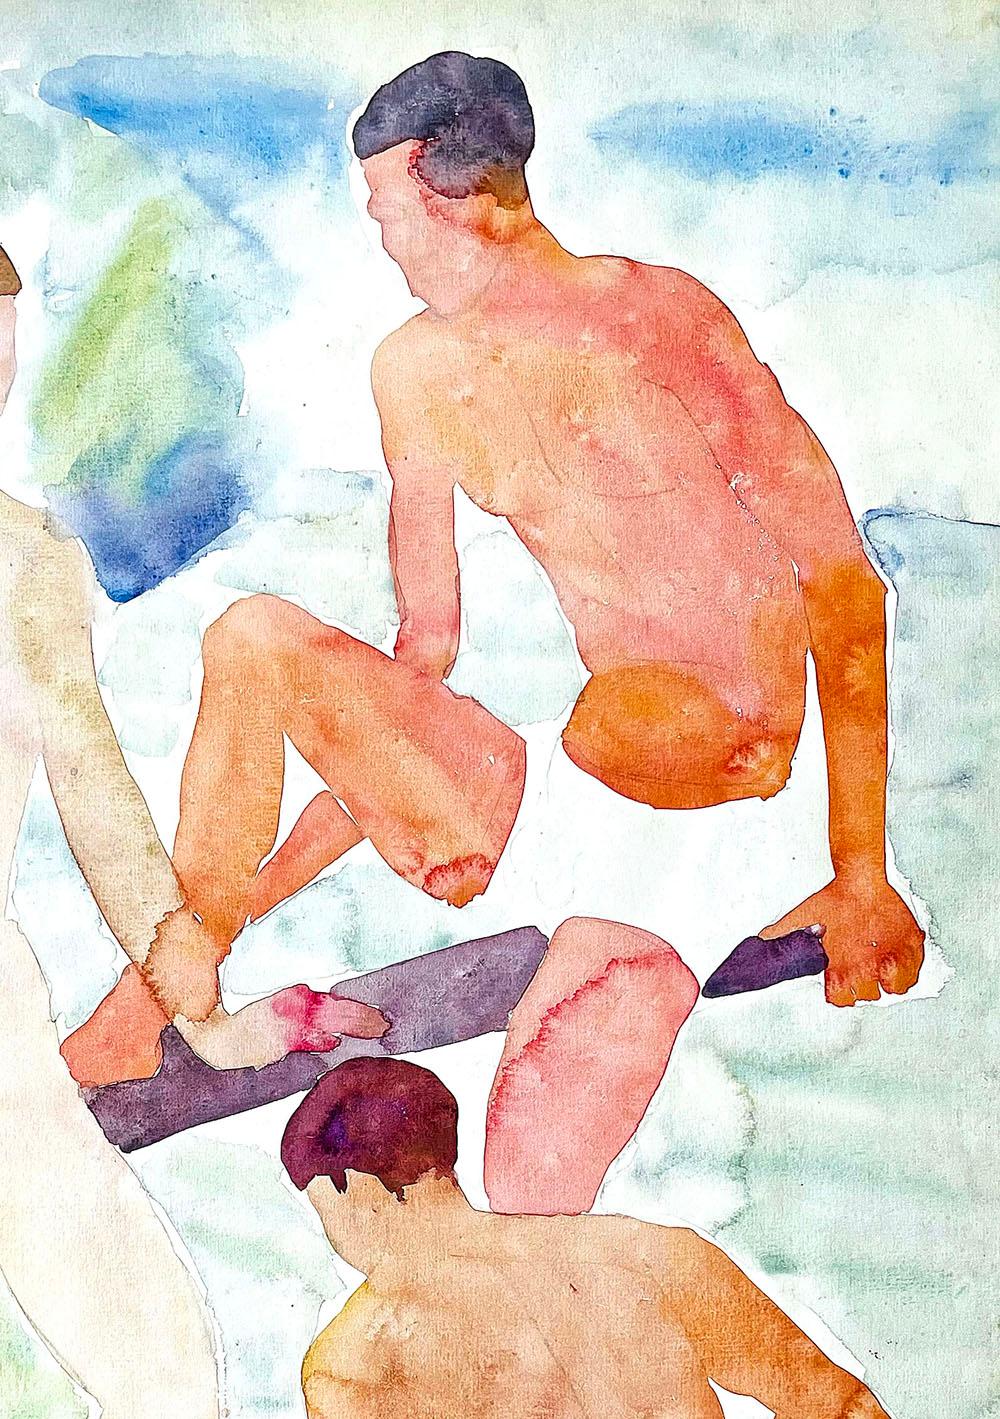 Nord-américain « Nus baigneurs masculins », peinture à l'aquarelle des années 1930 représentant des personnages nus, bleu et brun clair en vente